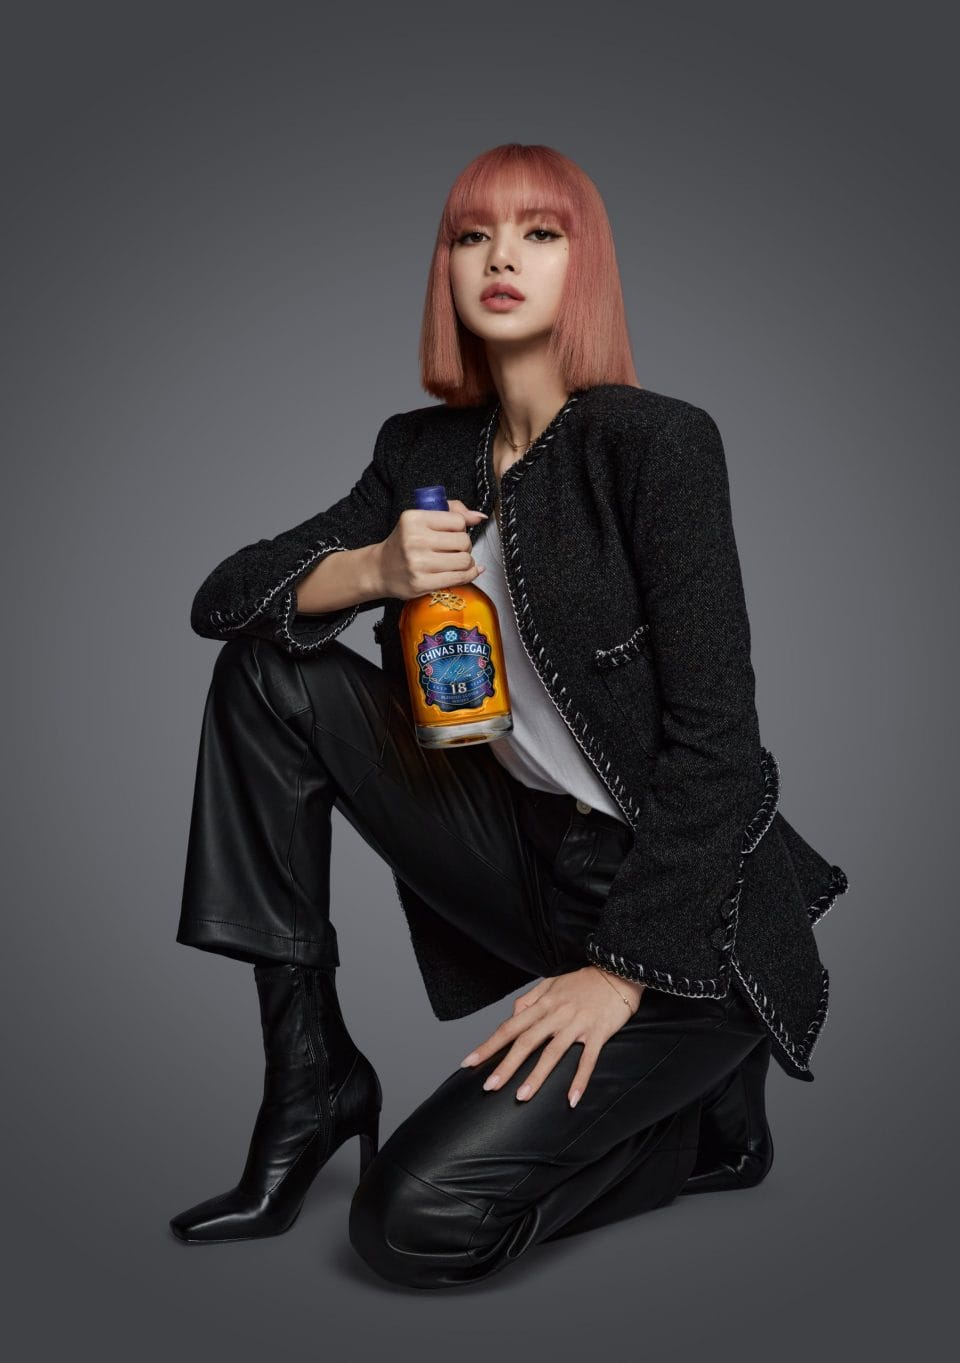 LISA Has Designed Her Very Own Chivas 18 Bottle 